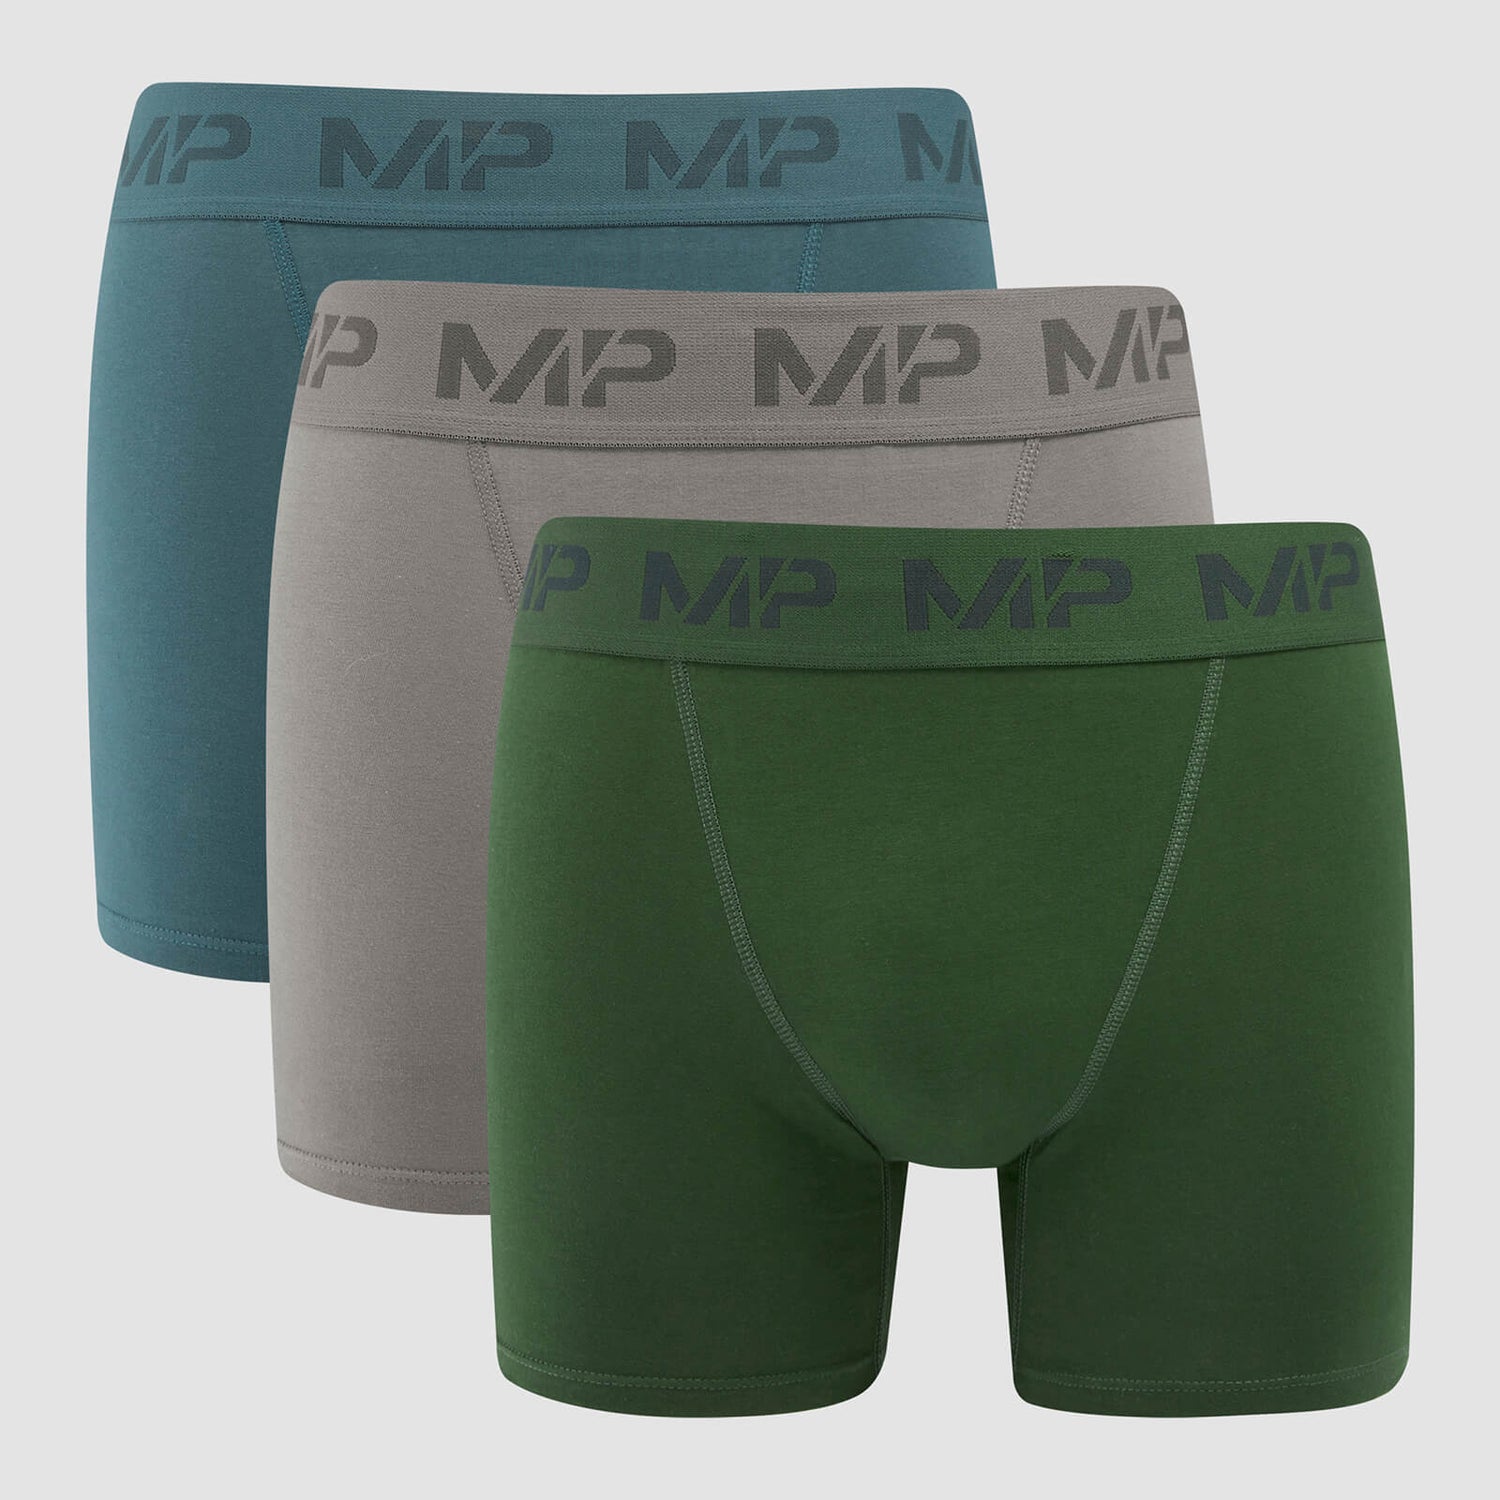 Bóxers para hombre de MP (paquete de 3) - Gris carbón/azul ahumado/verde oscuro - XXS